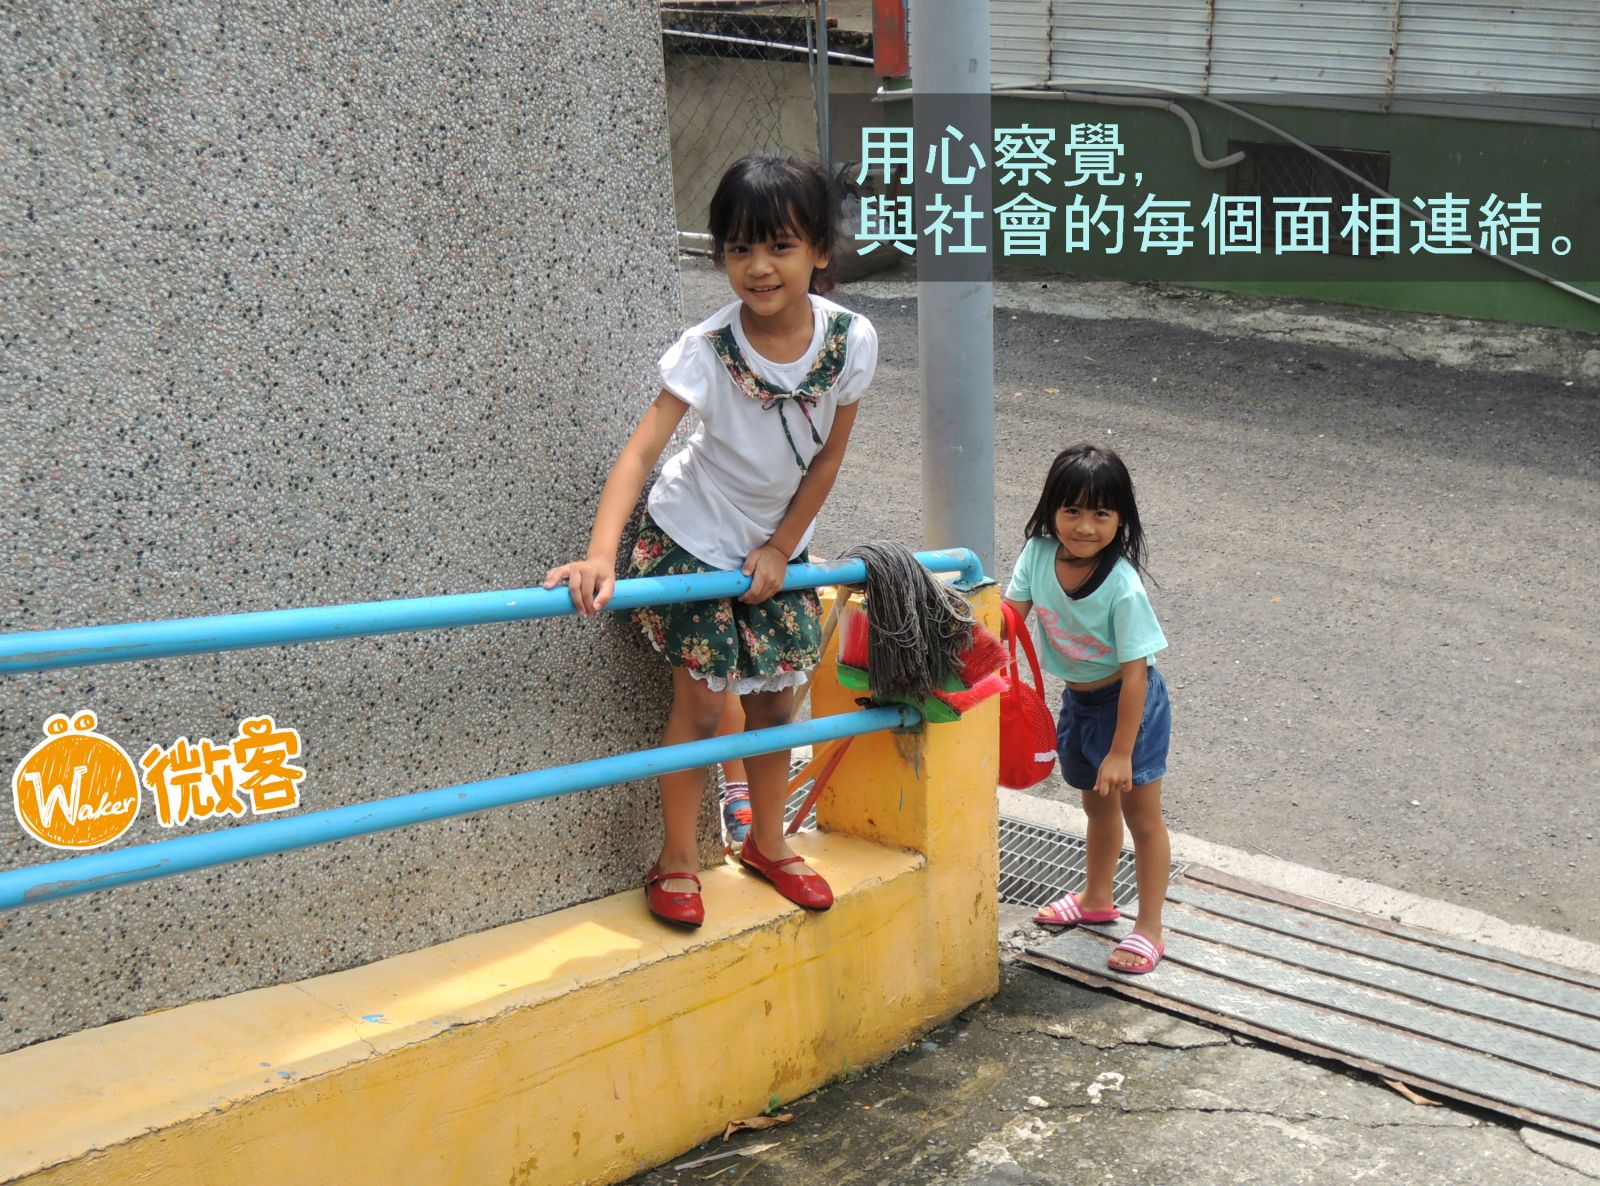 台灣/陪伴孩子揮出不一樣的夢想 | 文章內置圖片